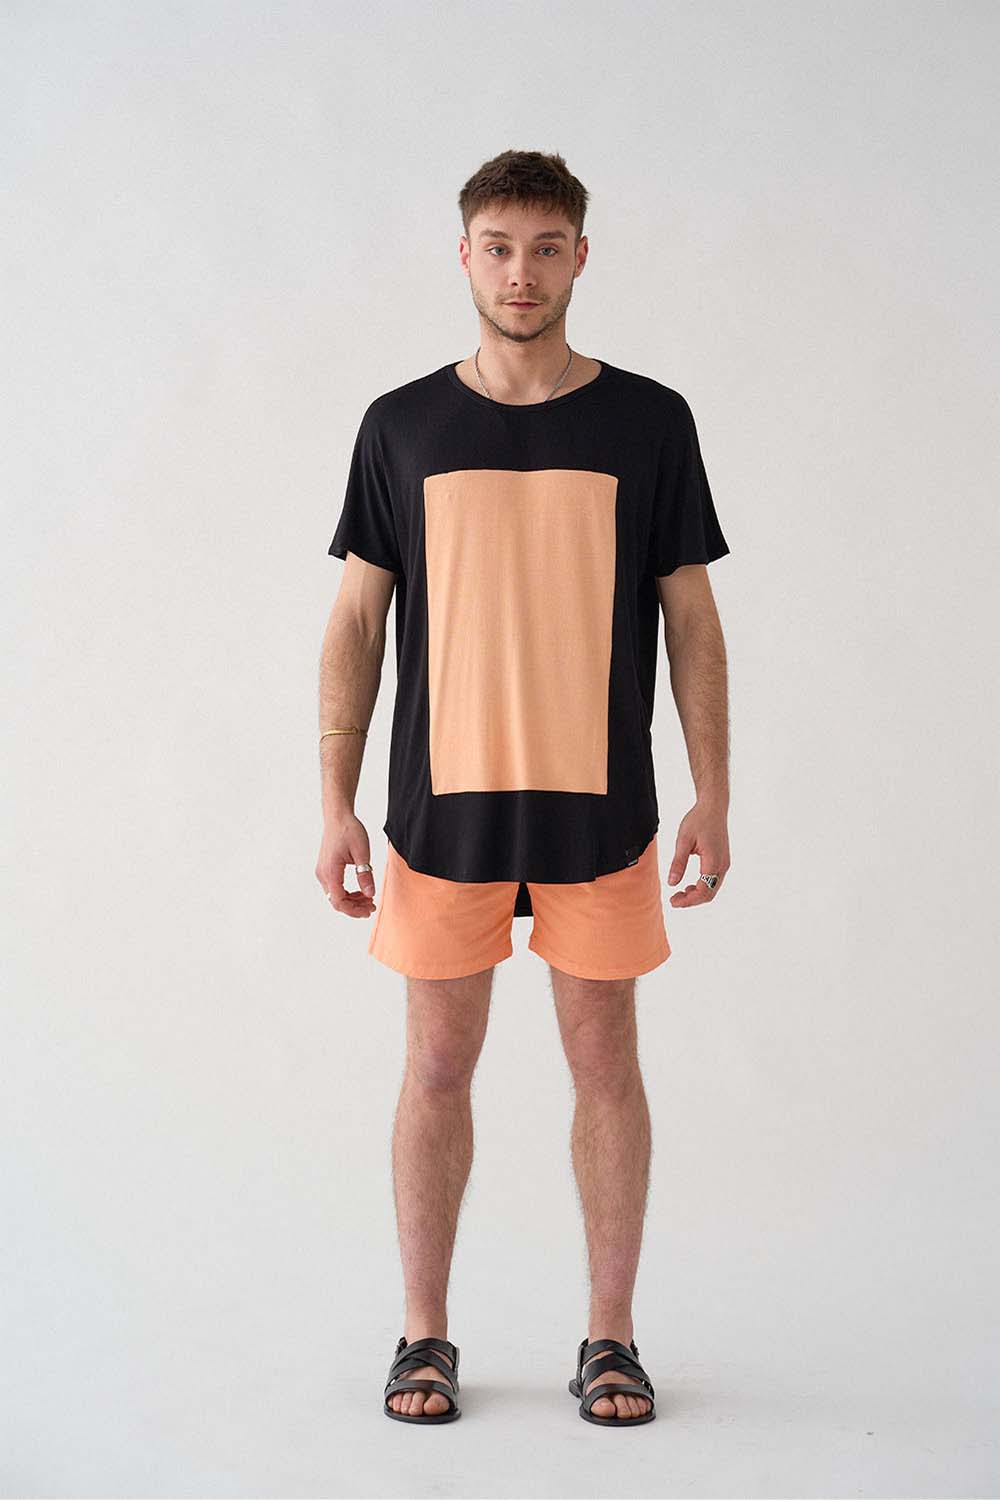 imagen entera del modelo con camiseta quadrilaterus negro y salmón y shorts salmón